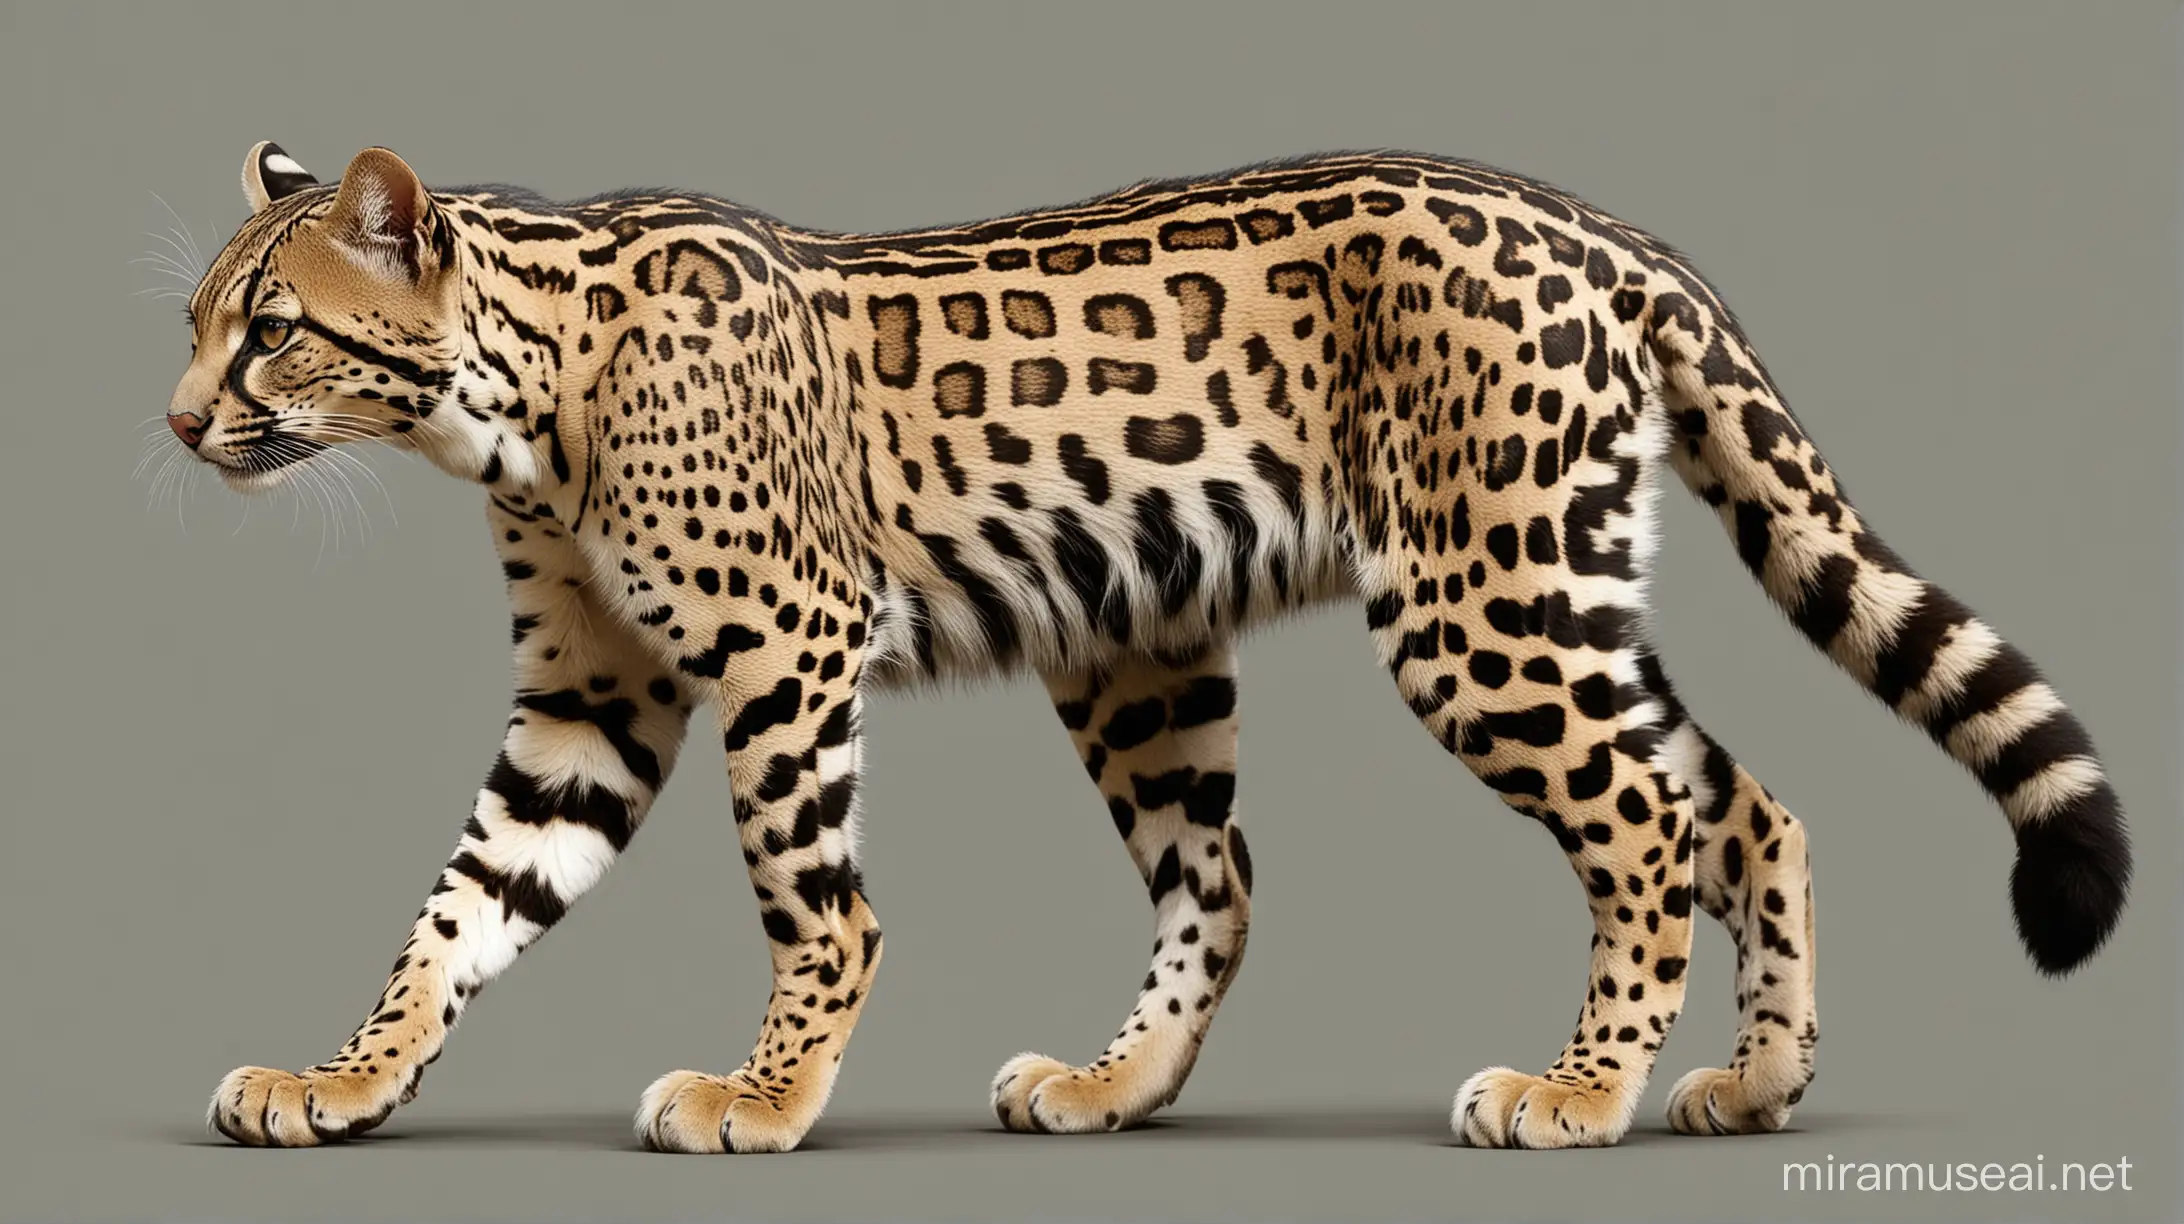 Imagen digital vectorizada del ocelote leopardus pardalis, sin fondo